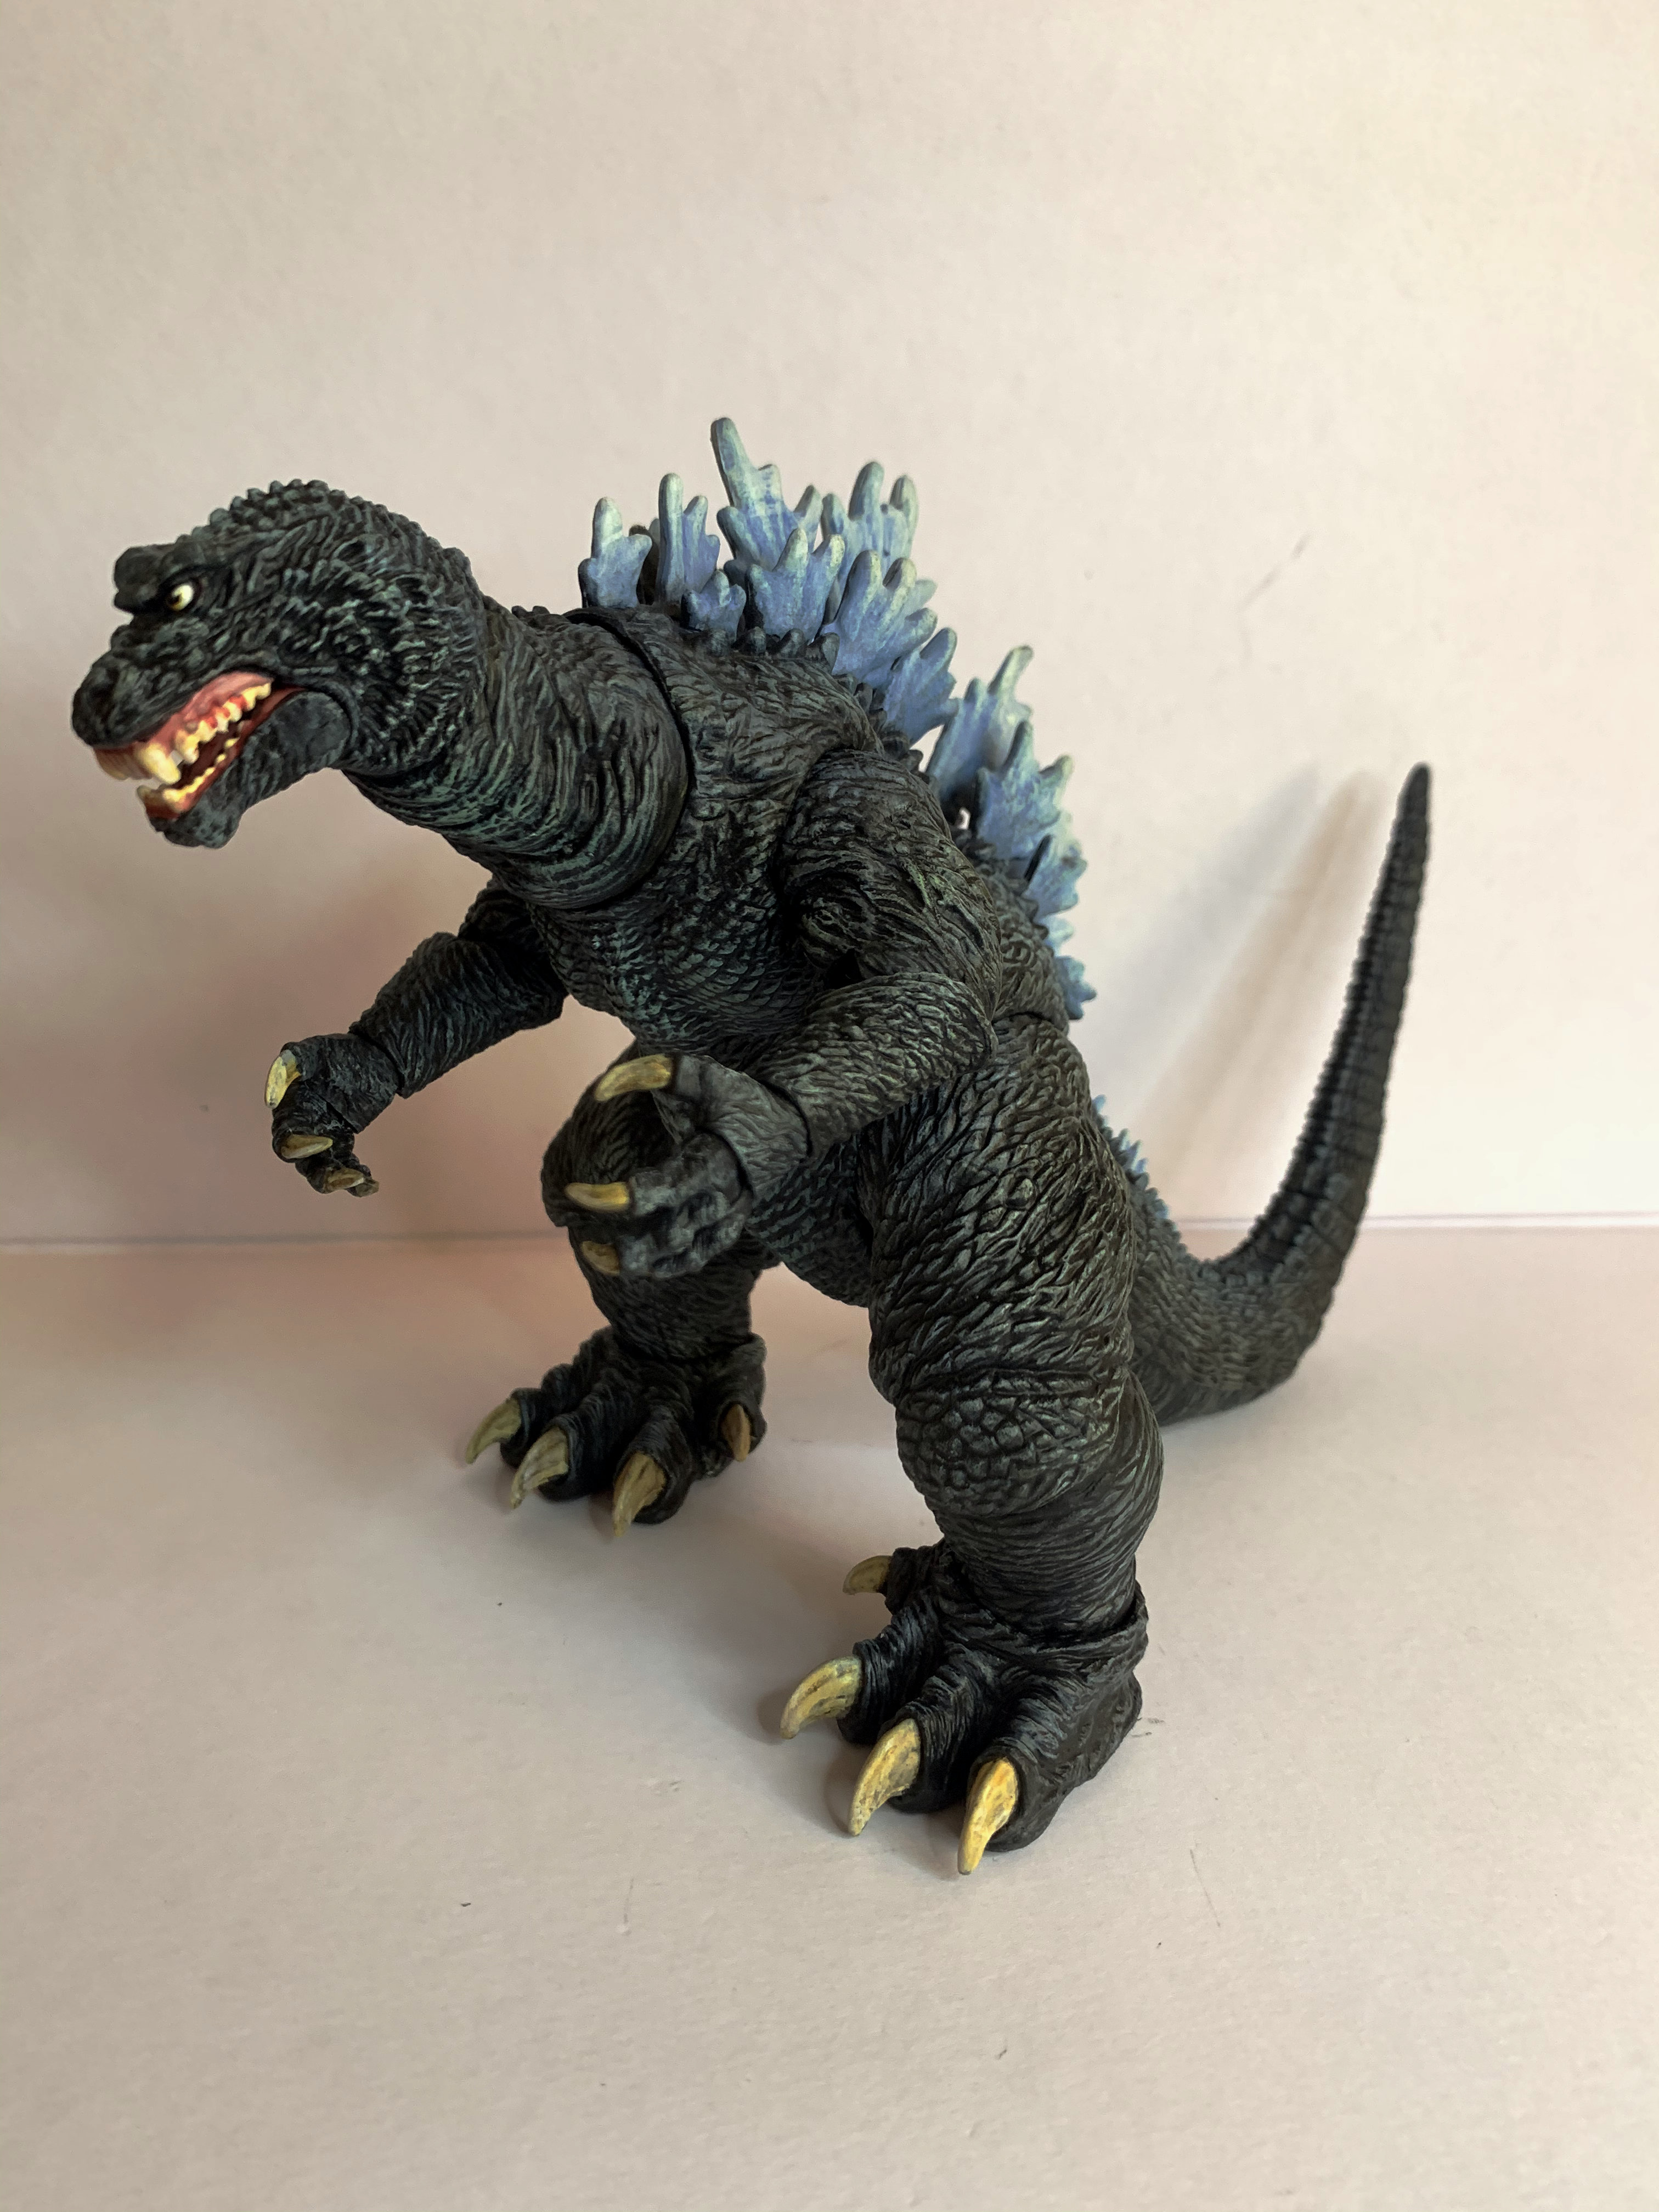 国产NECA哥斯拉Godzilla手办模型手绘重涂版关节可动怪兽玩偶摆件